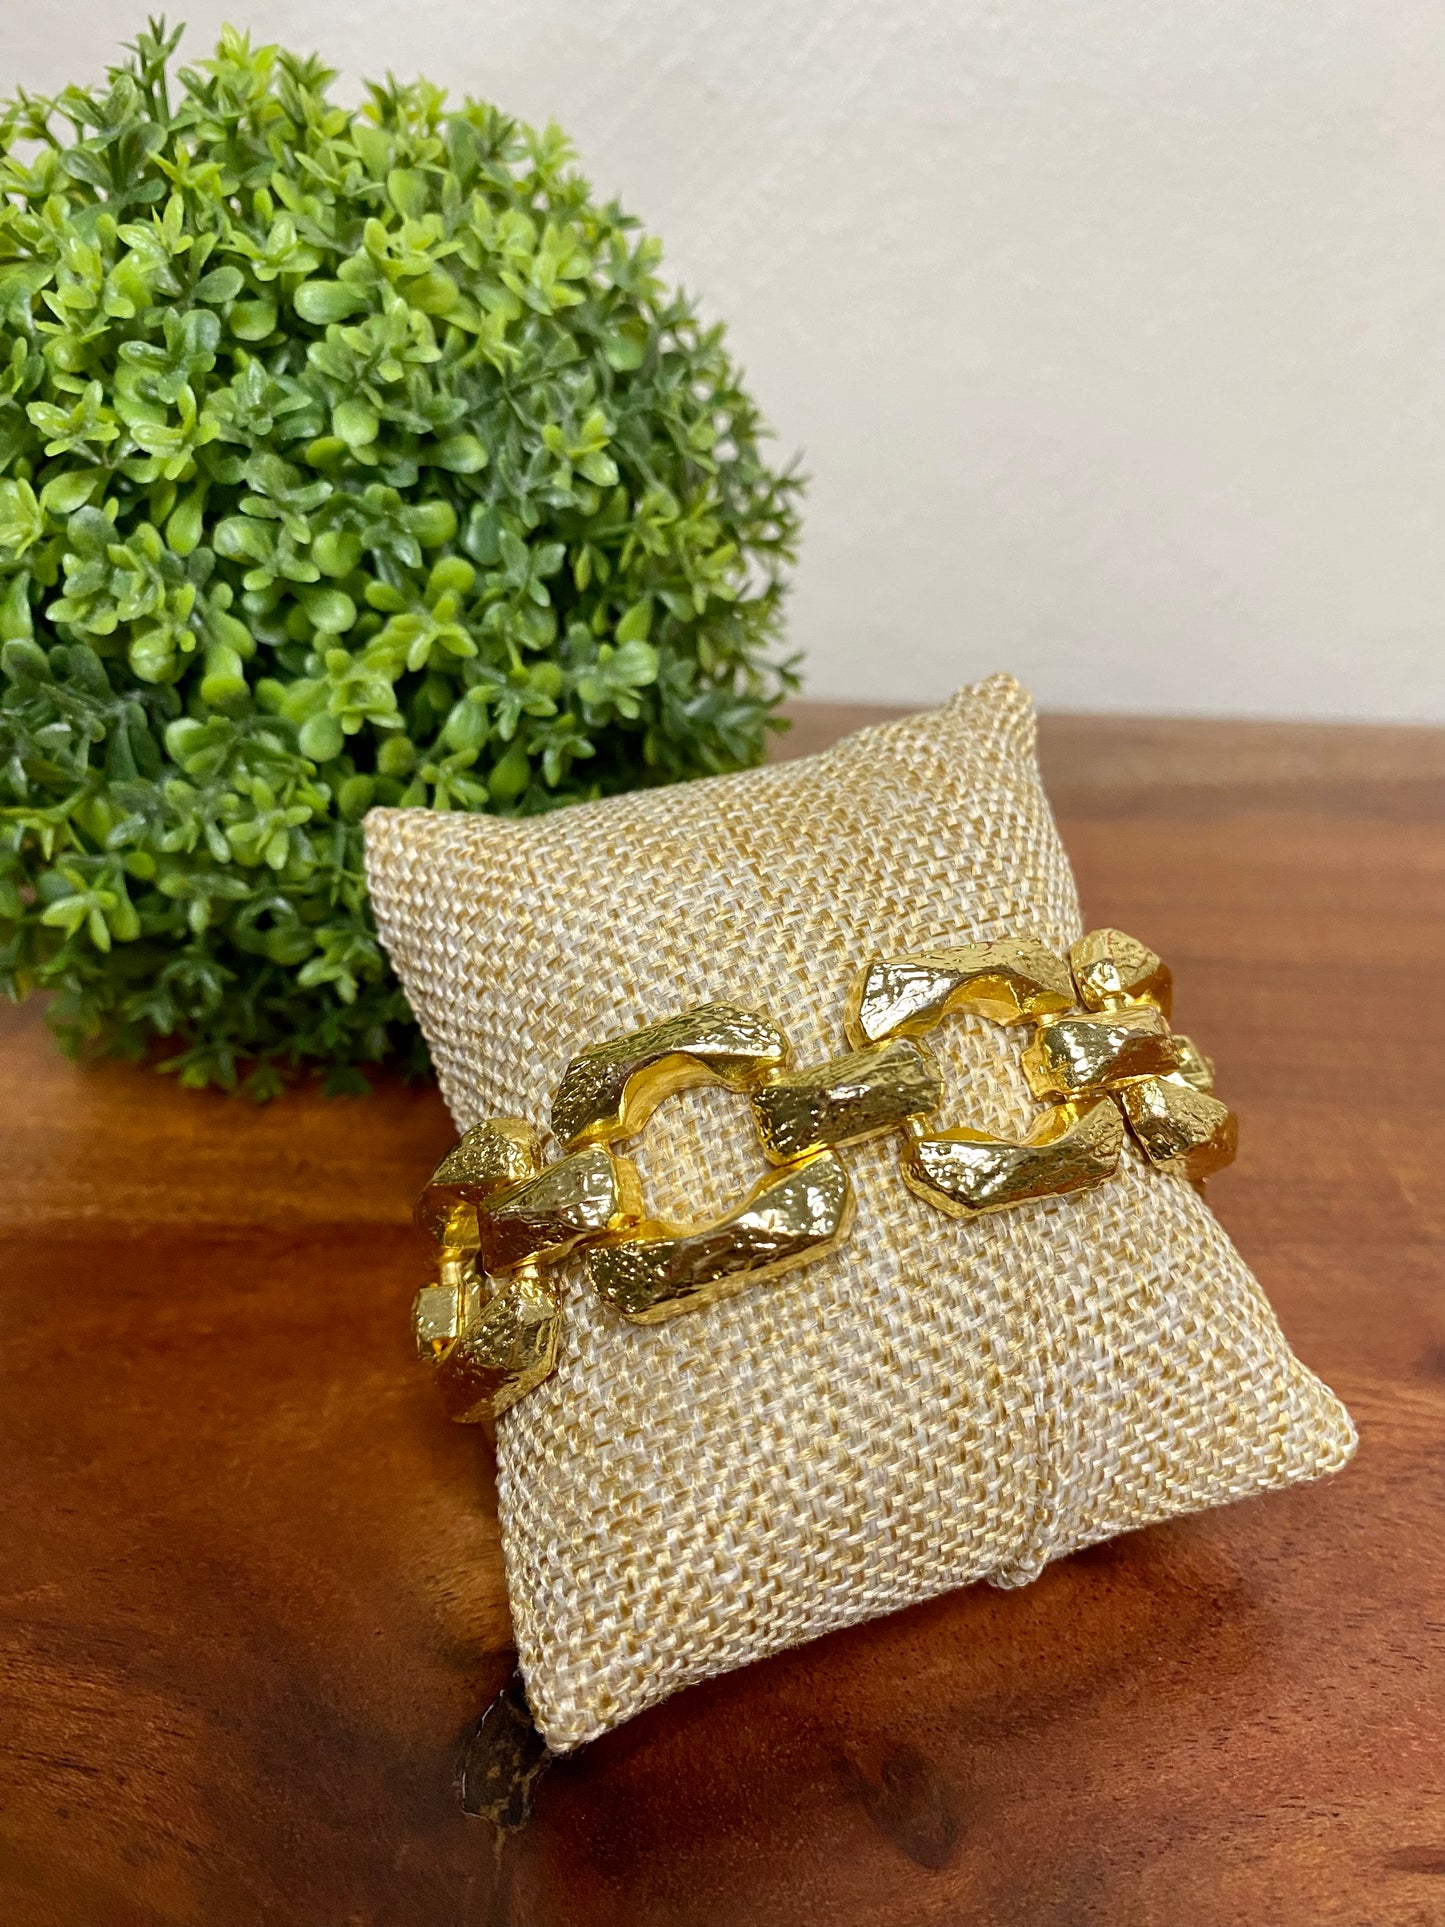 18k gold plated bracelets